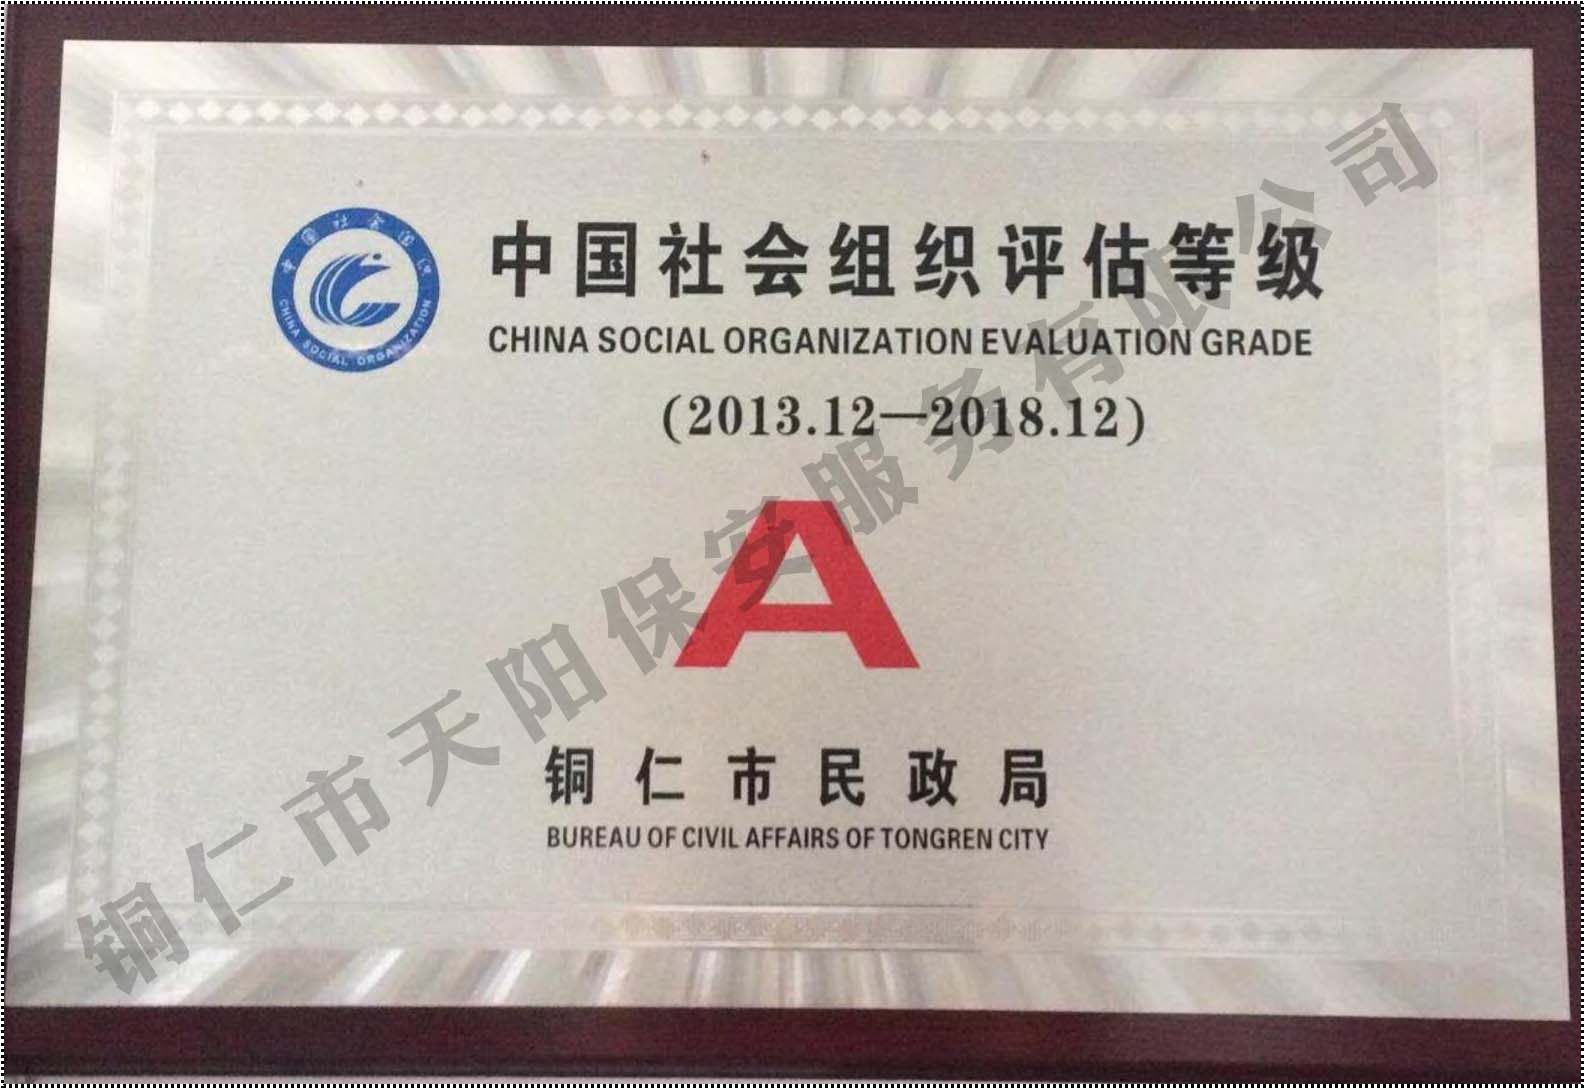 中國社會組織評估等級